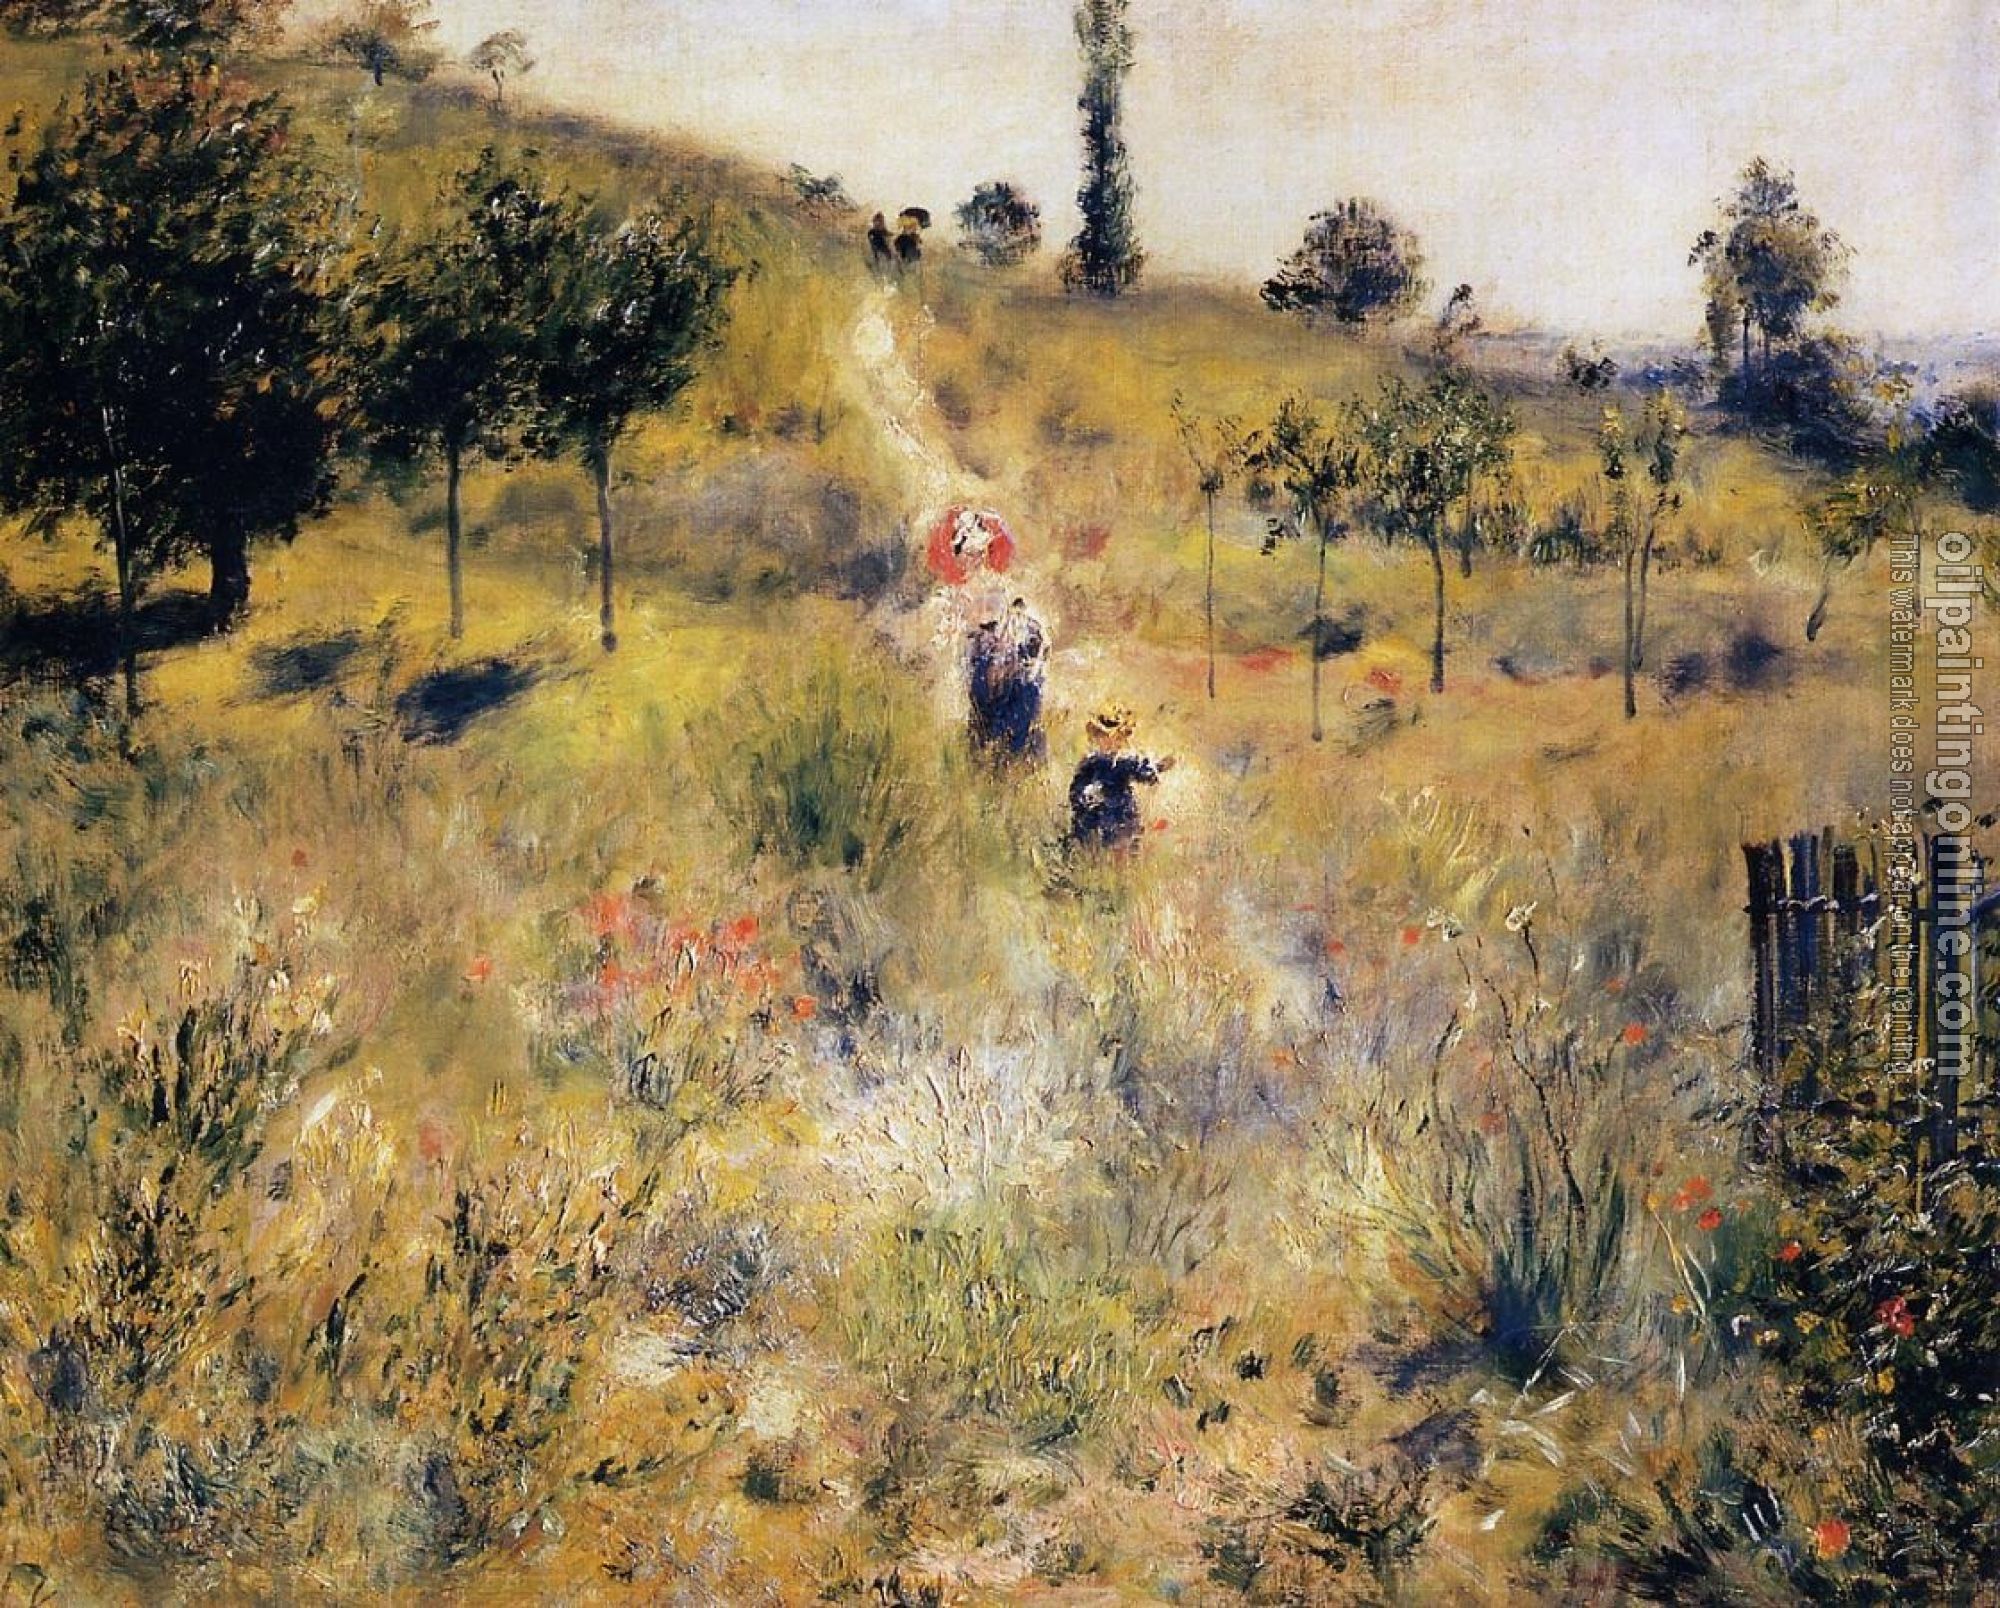 Renoir, Pierre Auguste - Path Leading through Tall Grass